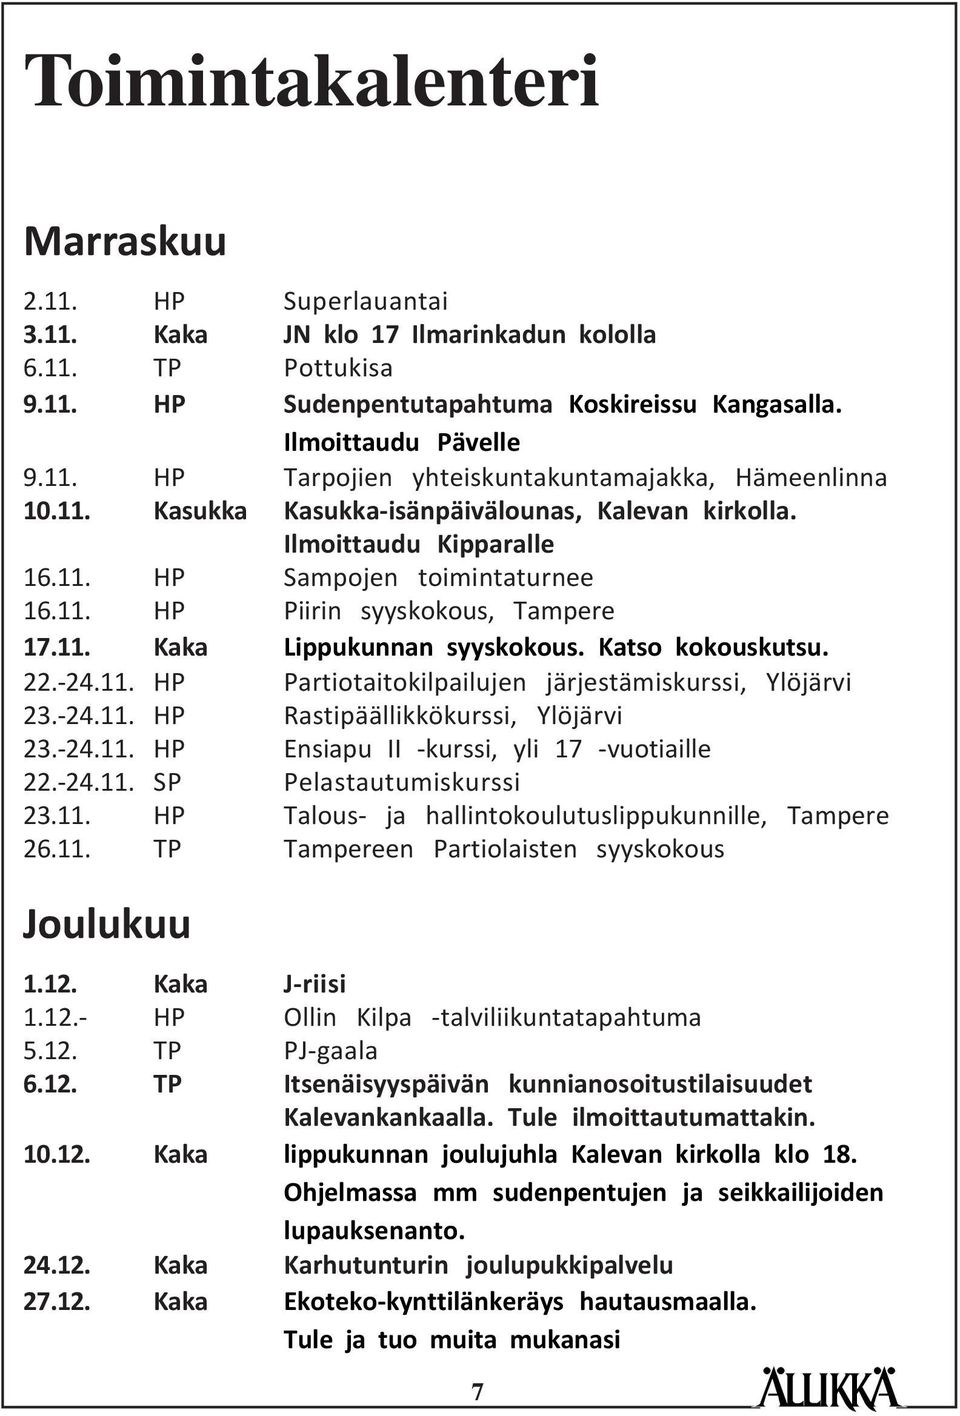 Katso kokouskutsu. 22.-24.11. HP Partiotaitokilpailujen järjestämiskurssi, Ylöjärvi 23.-24.11. HP Rastipäällikkökurssi, Ylöjärvi 23.-24.11. HP Ensiapu II -kurssi, yli 17 -vuotiaille 22.-24.11. SP Pelastautumiskurssi 23.